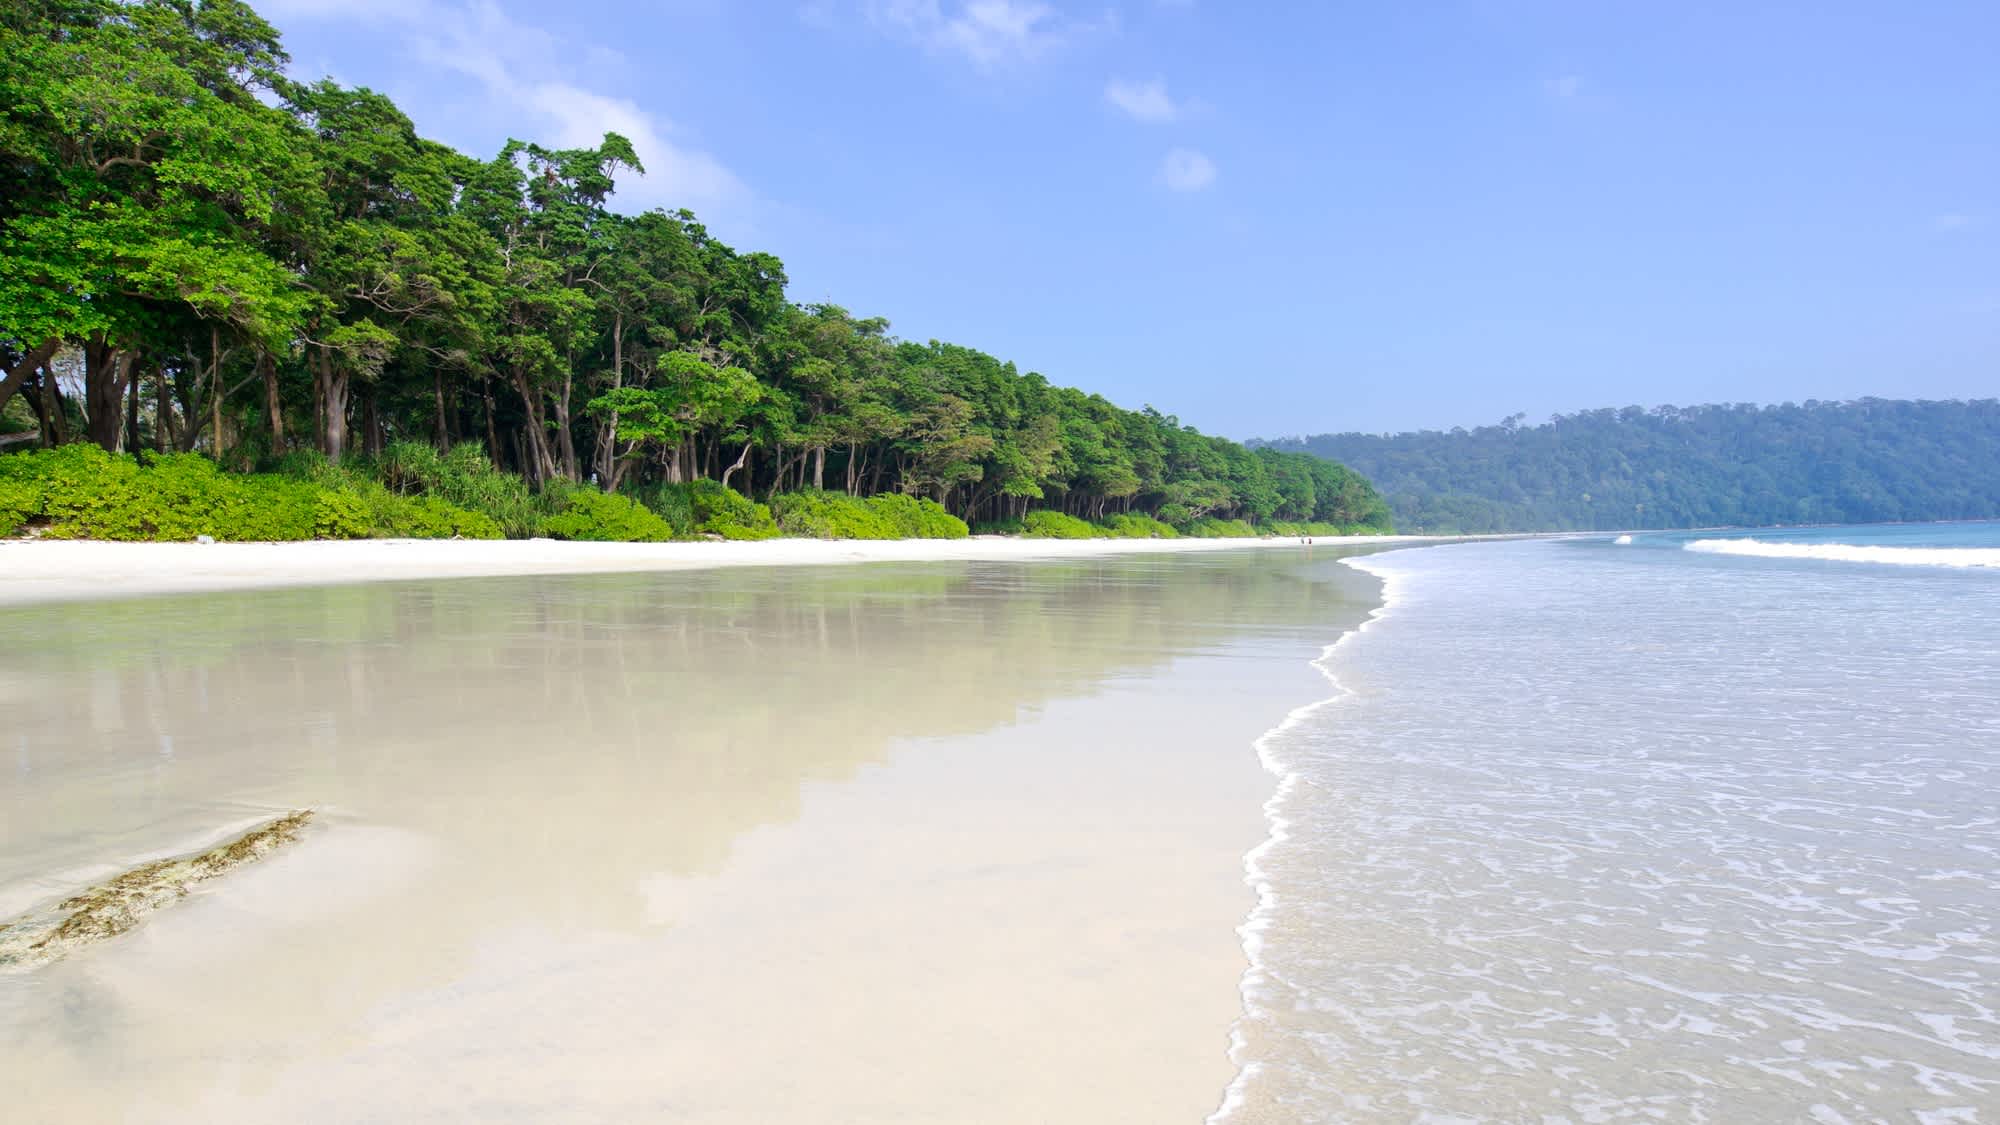 Vue sur le sable blanc entouré de végétation verdoyante et d'eaux cristallines, plage de Radhanagar, en Inde